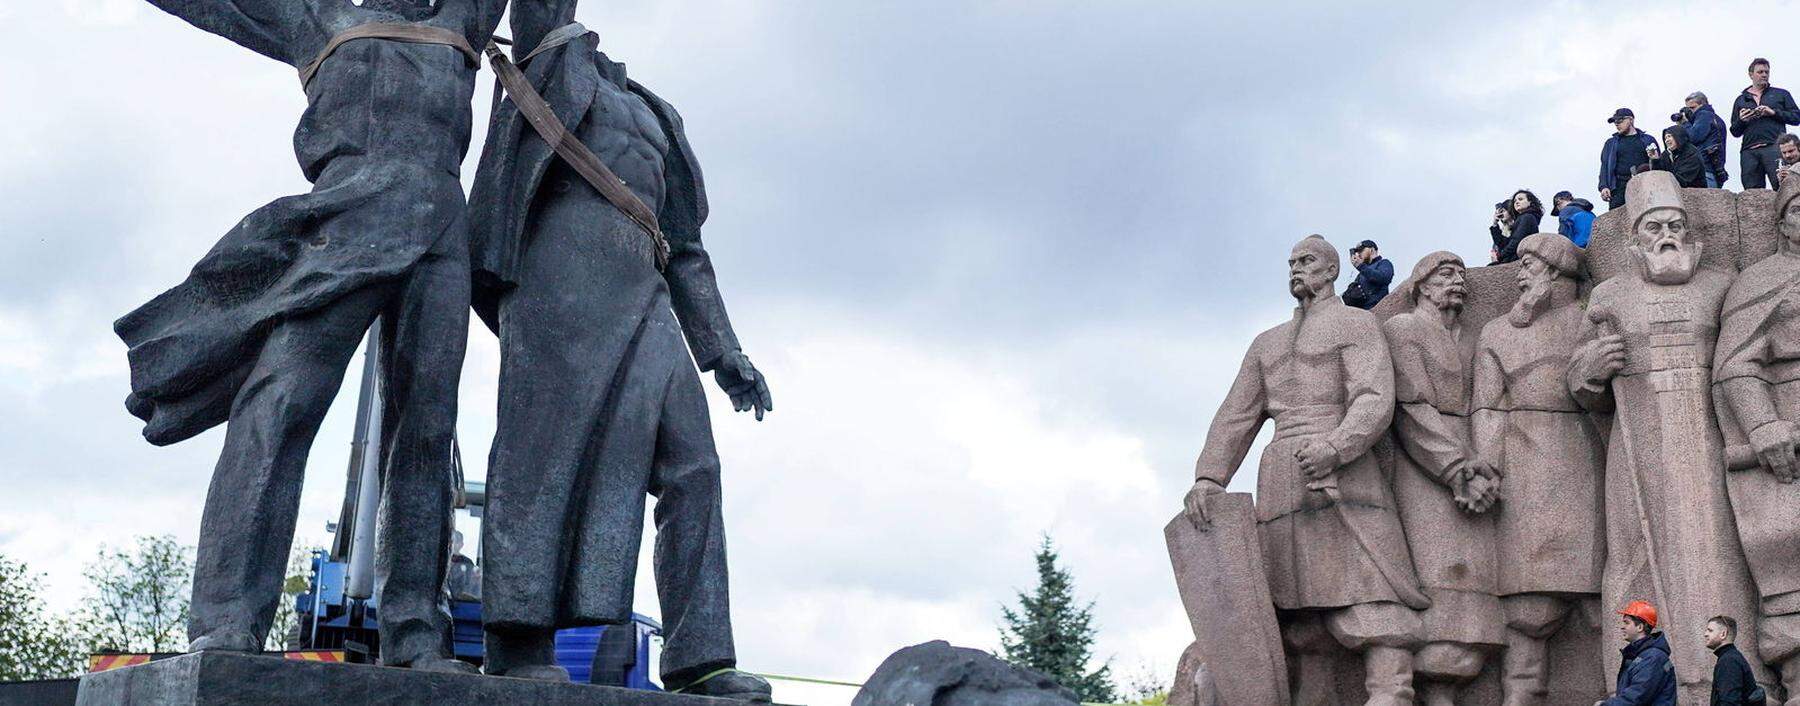 Die Denkmalgruppe in Kiew soll eine Völkerfreundschaft bezeugen, die es nicht mehr gibt. Sie wurde teilweise demontiert. 